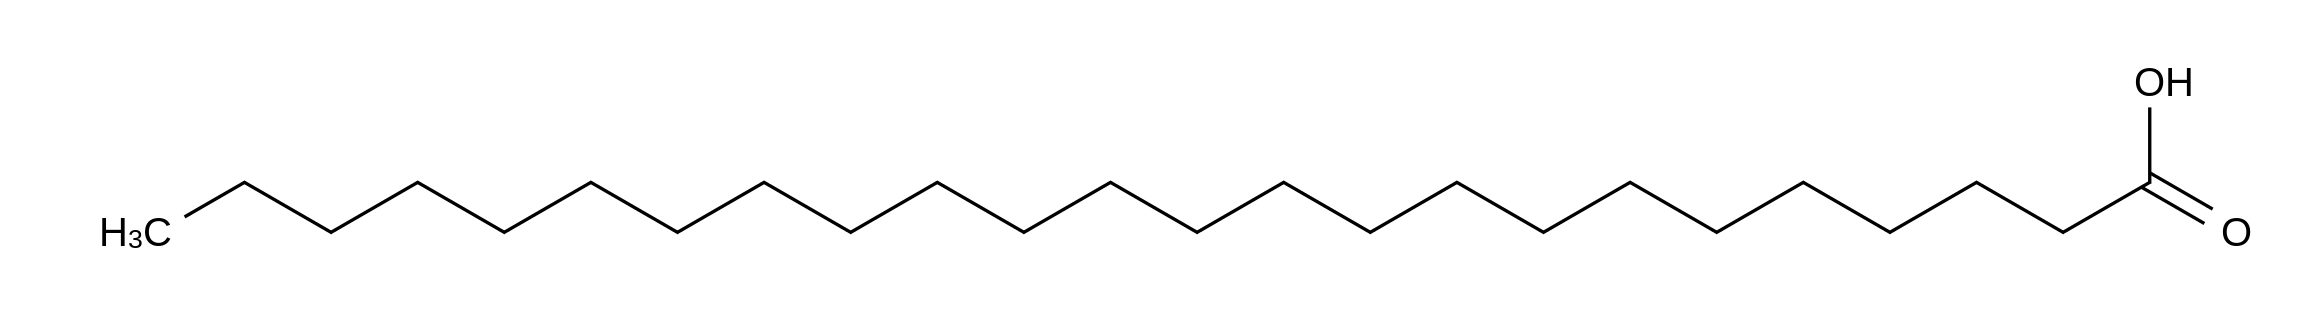 Tetracosanoic Acid